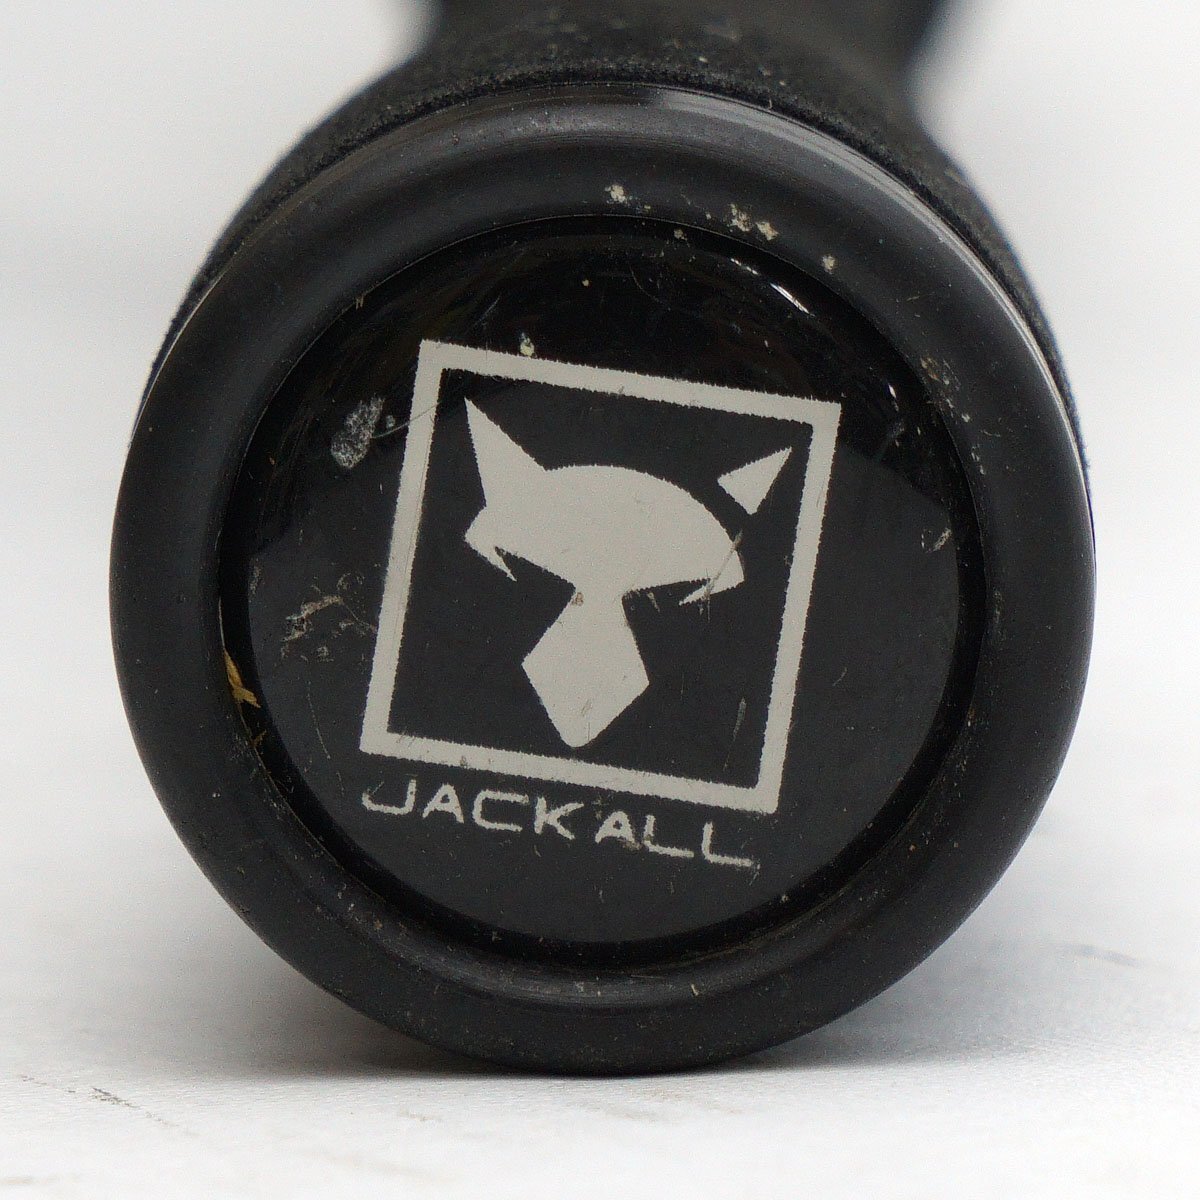 JACKALL ジャッカル 21 BPM B1-S64UL 1ピース スピニングロッド ウルトラライト [S800415]の画像8